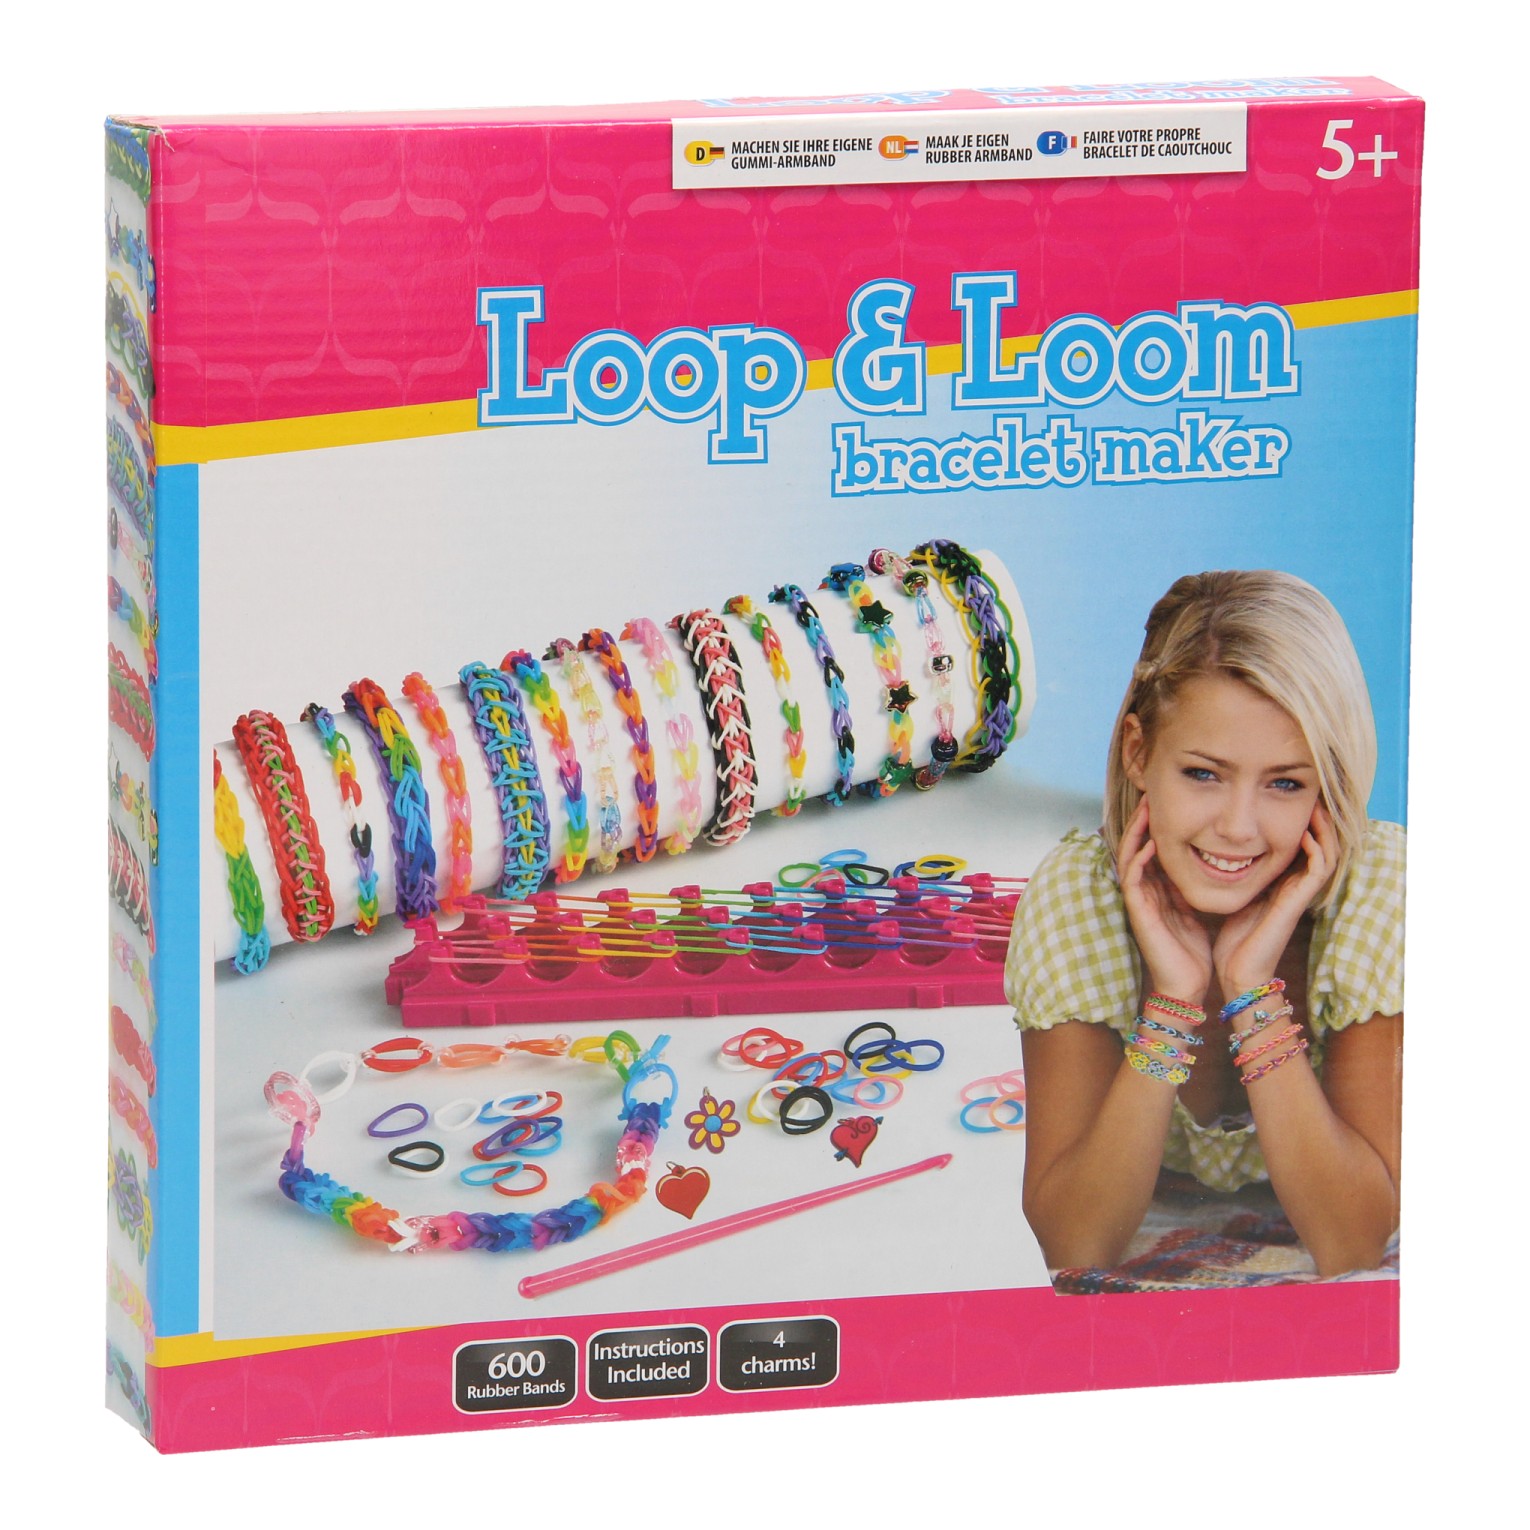 GL Style - 600 Rubber Bands Bracelet Maker Loop and Loom | eBay